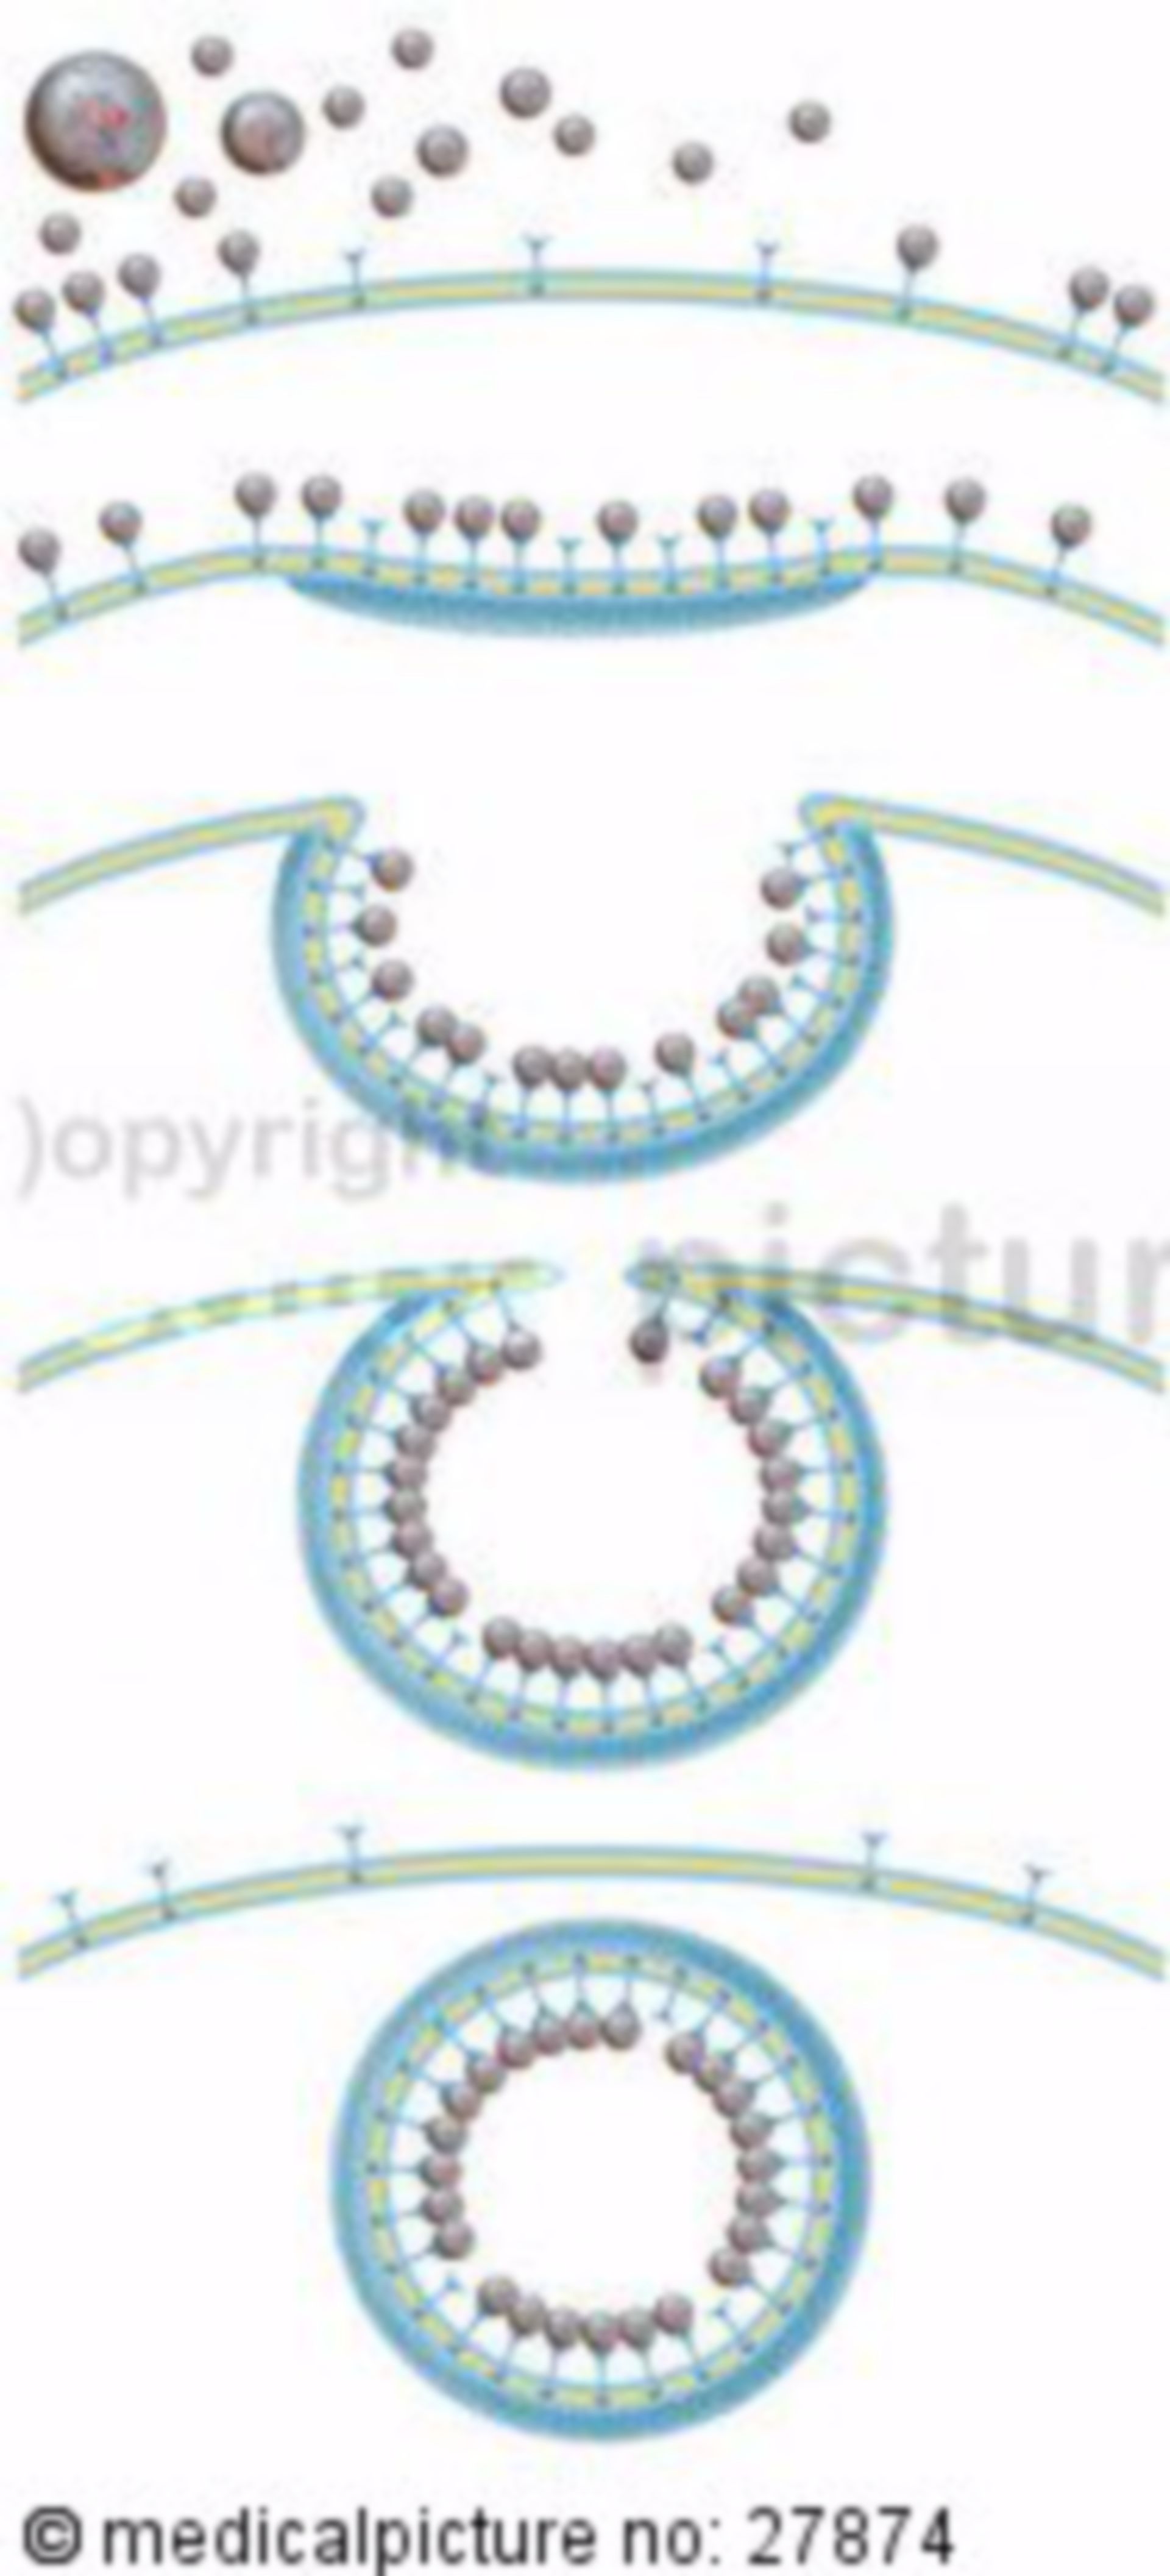 Receptor-mediated Endocytosis